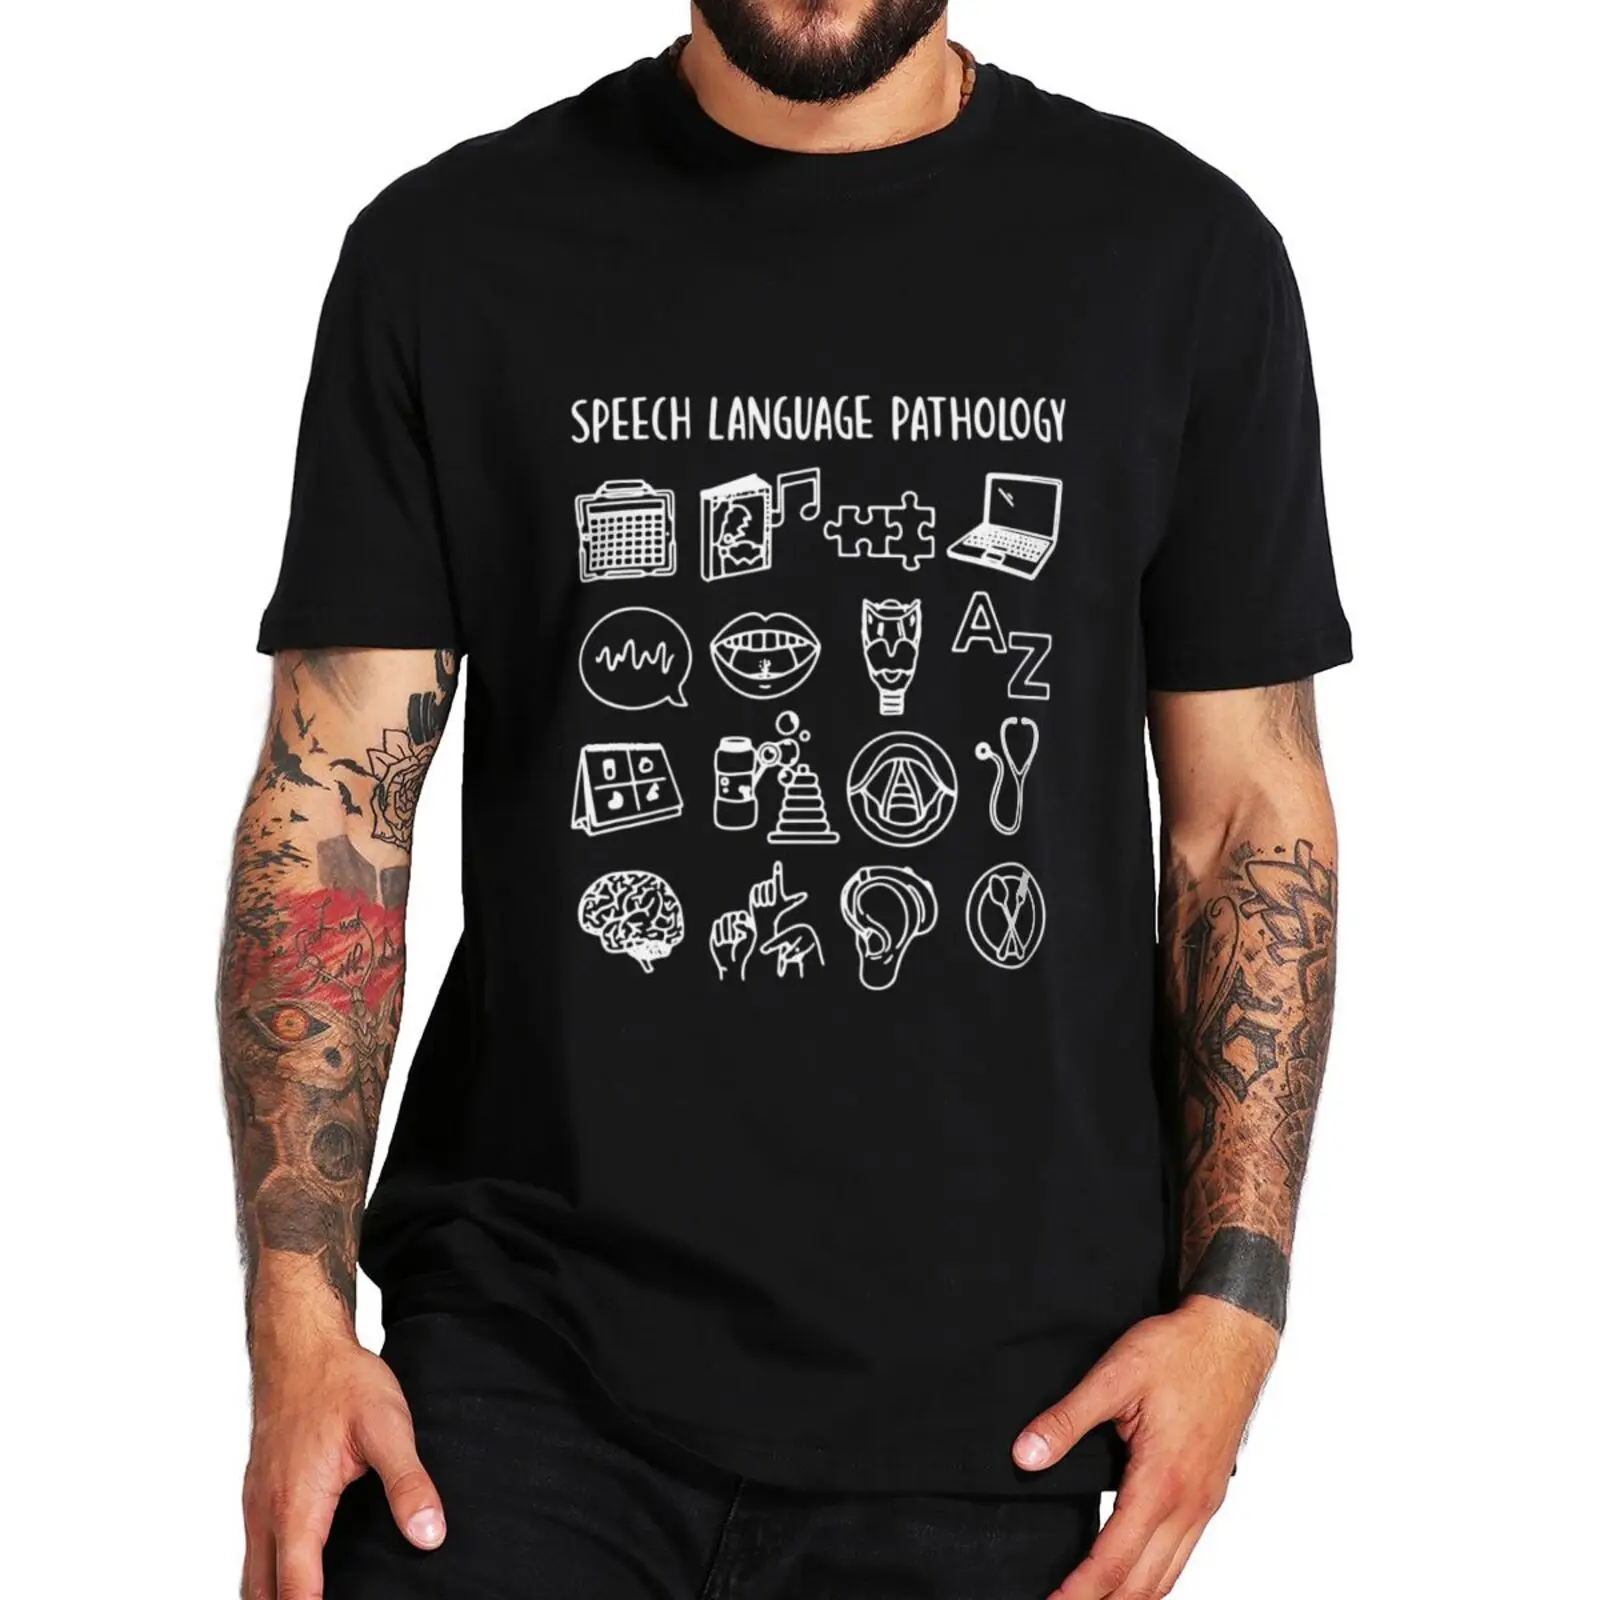 

Speech Language Pathologies T Shirt Pathologist Graphic Humor Short Sleeve 100% Cotton Unisex Casual Summer Oversized T-shirts